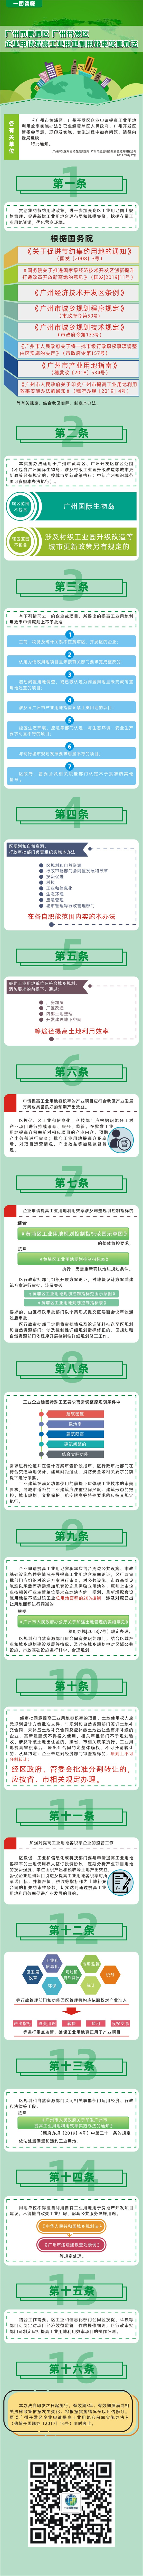 广州开发区企业申请提高工业用地利用效率实施办法.jpg